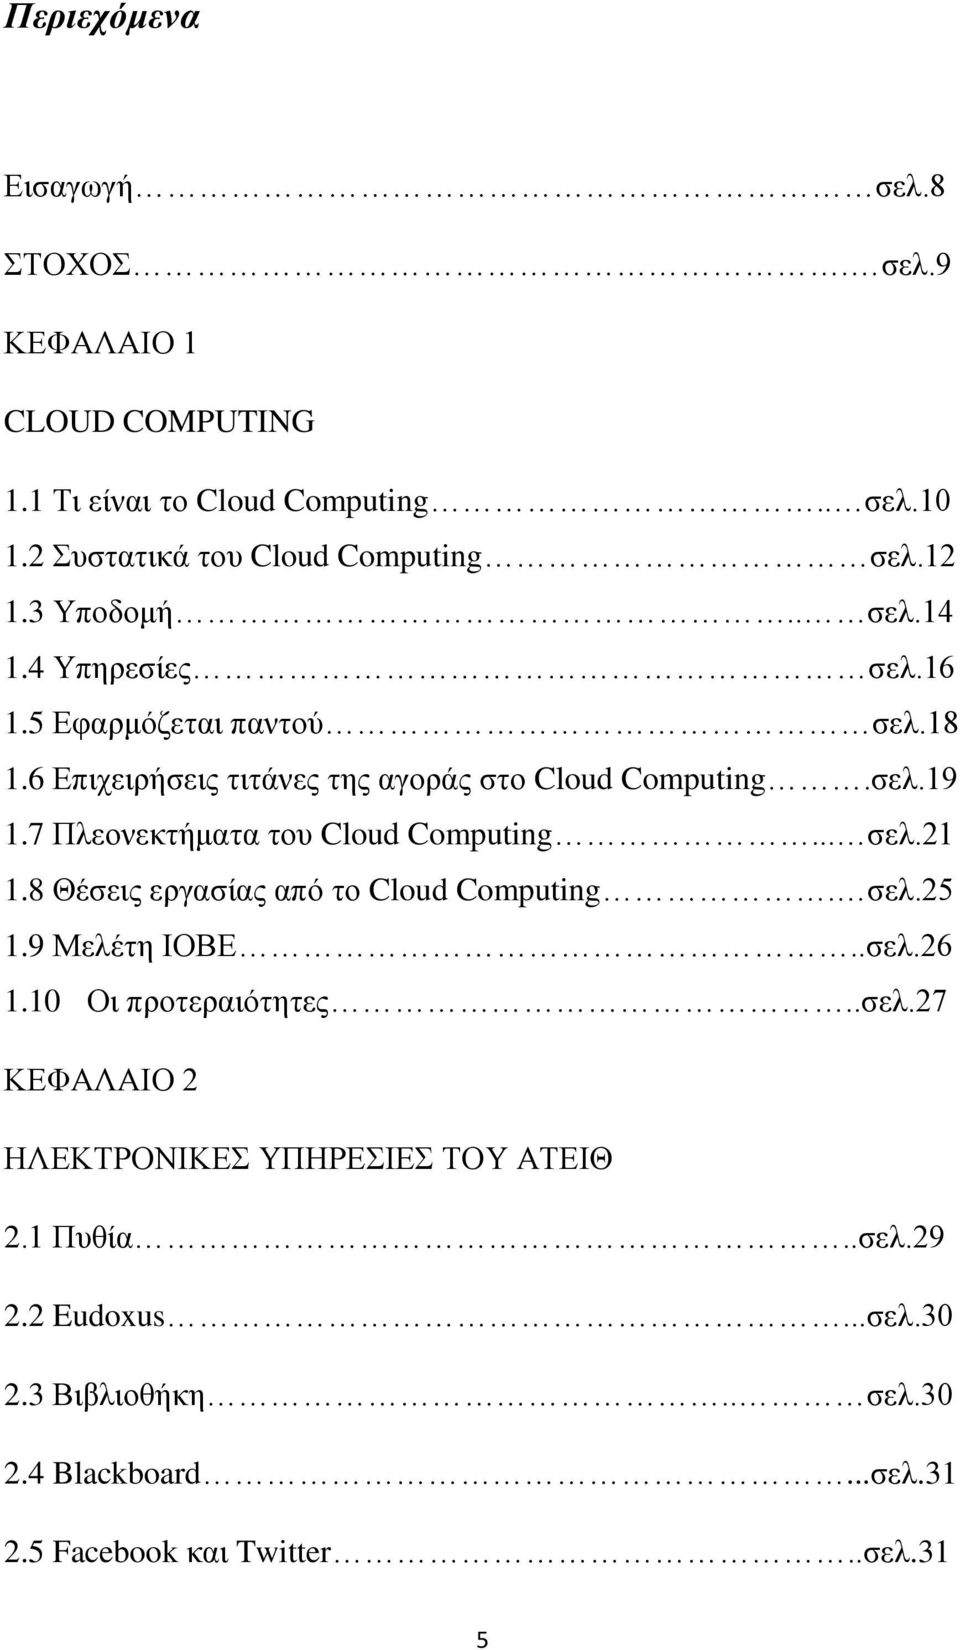 7 Πλεονεκτήματα του Cloud Computing... σελ.21 1.8 Θέσεις εργασίας από το Cloud Computing. σελ.25 1.9 Μελέτη ΙΟΒΕ..σελ.26 1.10 Οι προτεραιότητες..σελ.27 ΚΕΦΑΛΑΙΟ 2 ΗΛΕΚΤΡΟΝΙΚΕΣ ΥΠΗΡΕΣΙΕΣ ΤΟΥ ΑΤΕΙΘ 2.